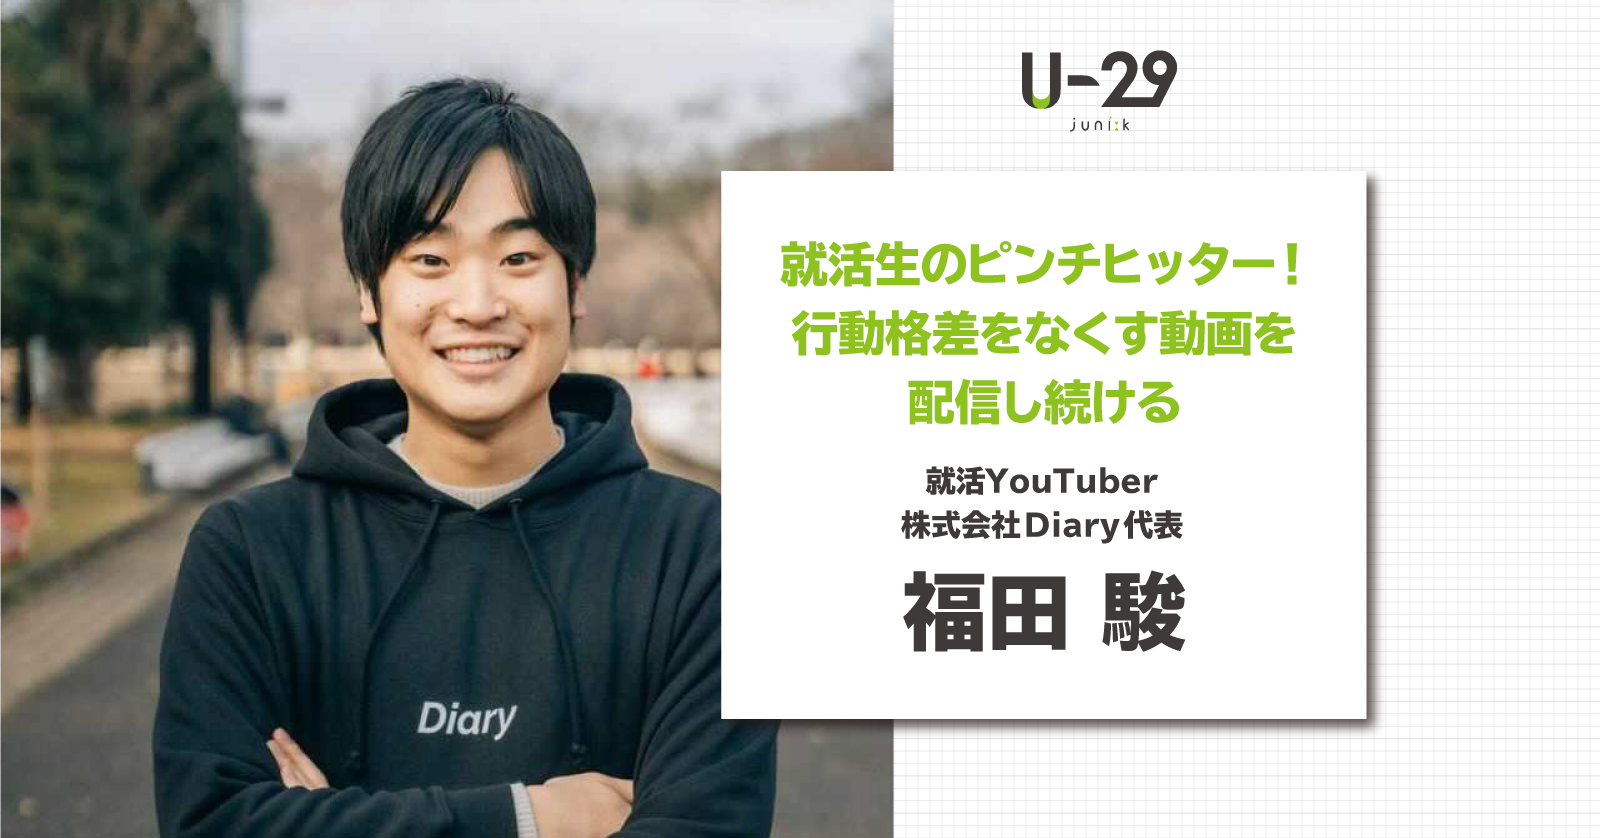 就活生のピンチヒッター 行動格差をなくす動画を配信し続ける Diary代表 福田駿 U 29 Com